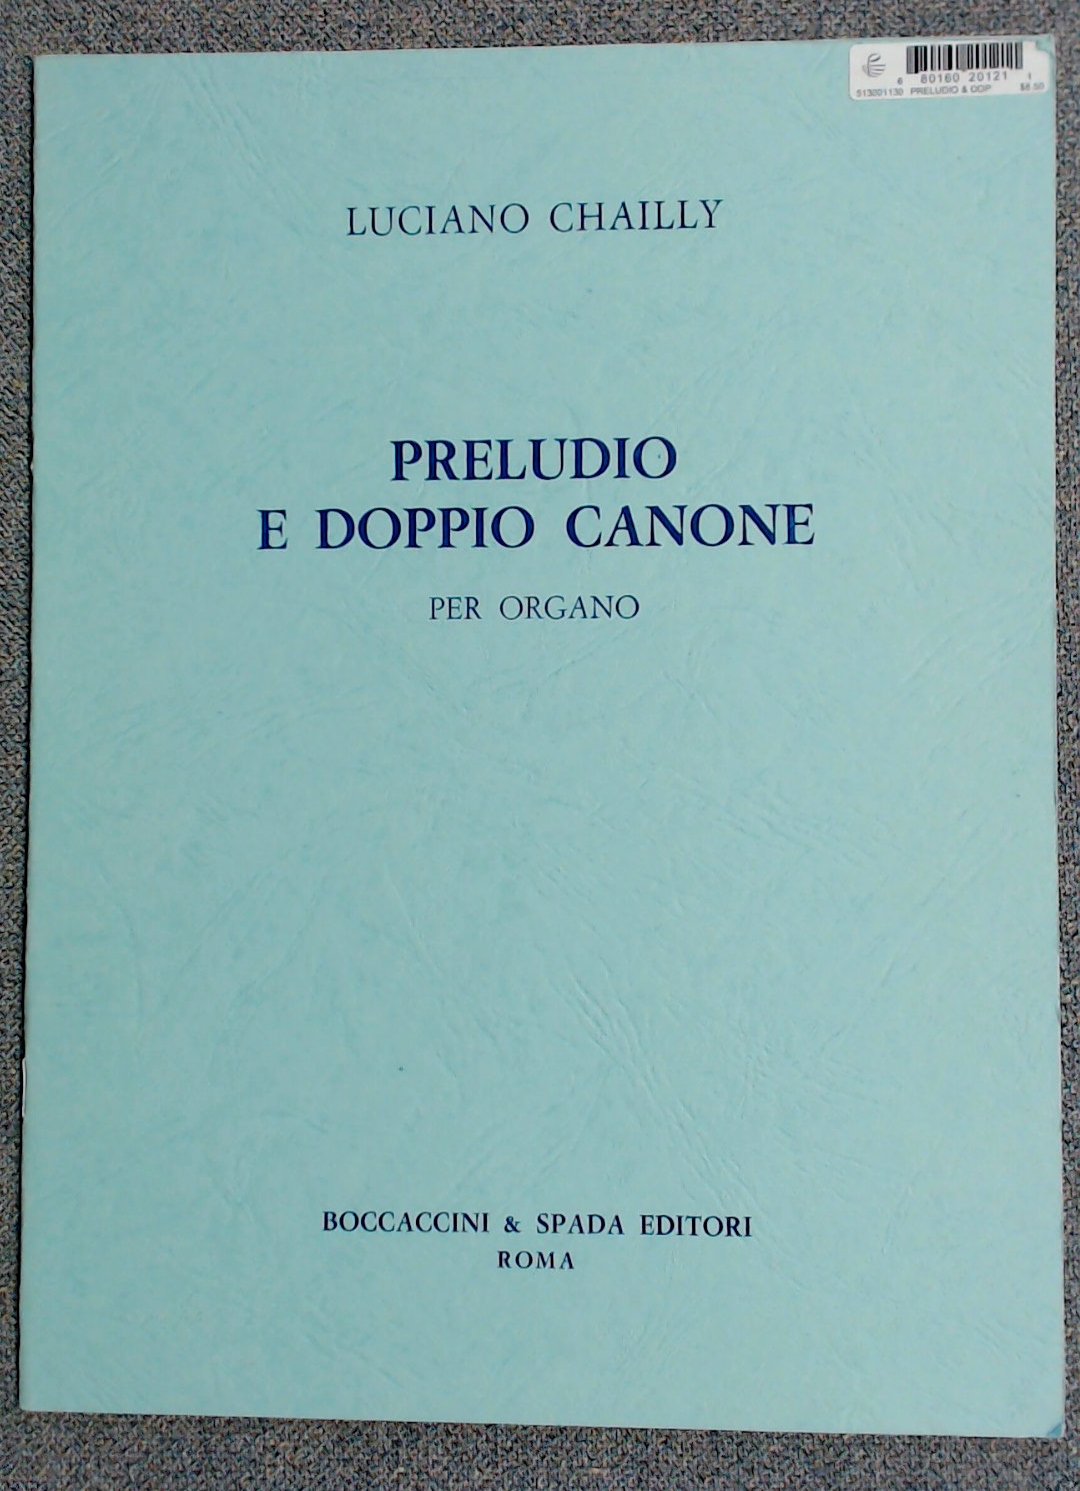 Luciano Chailly Preludio E Dopio Canone (Double Canon) Organ - Click Image to Close